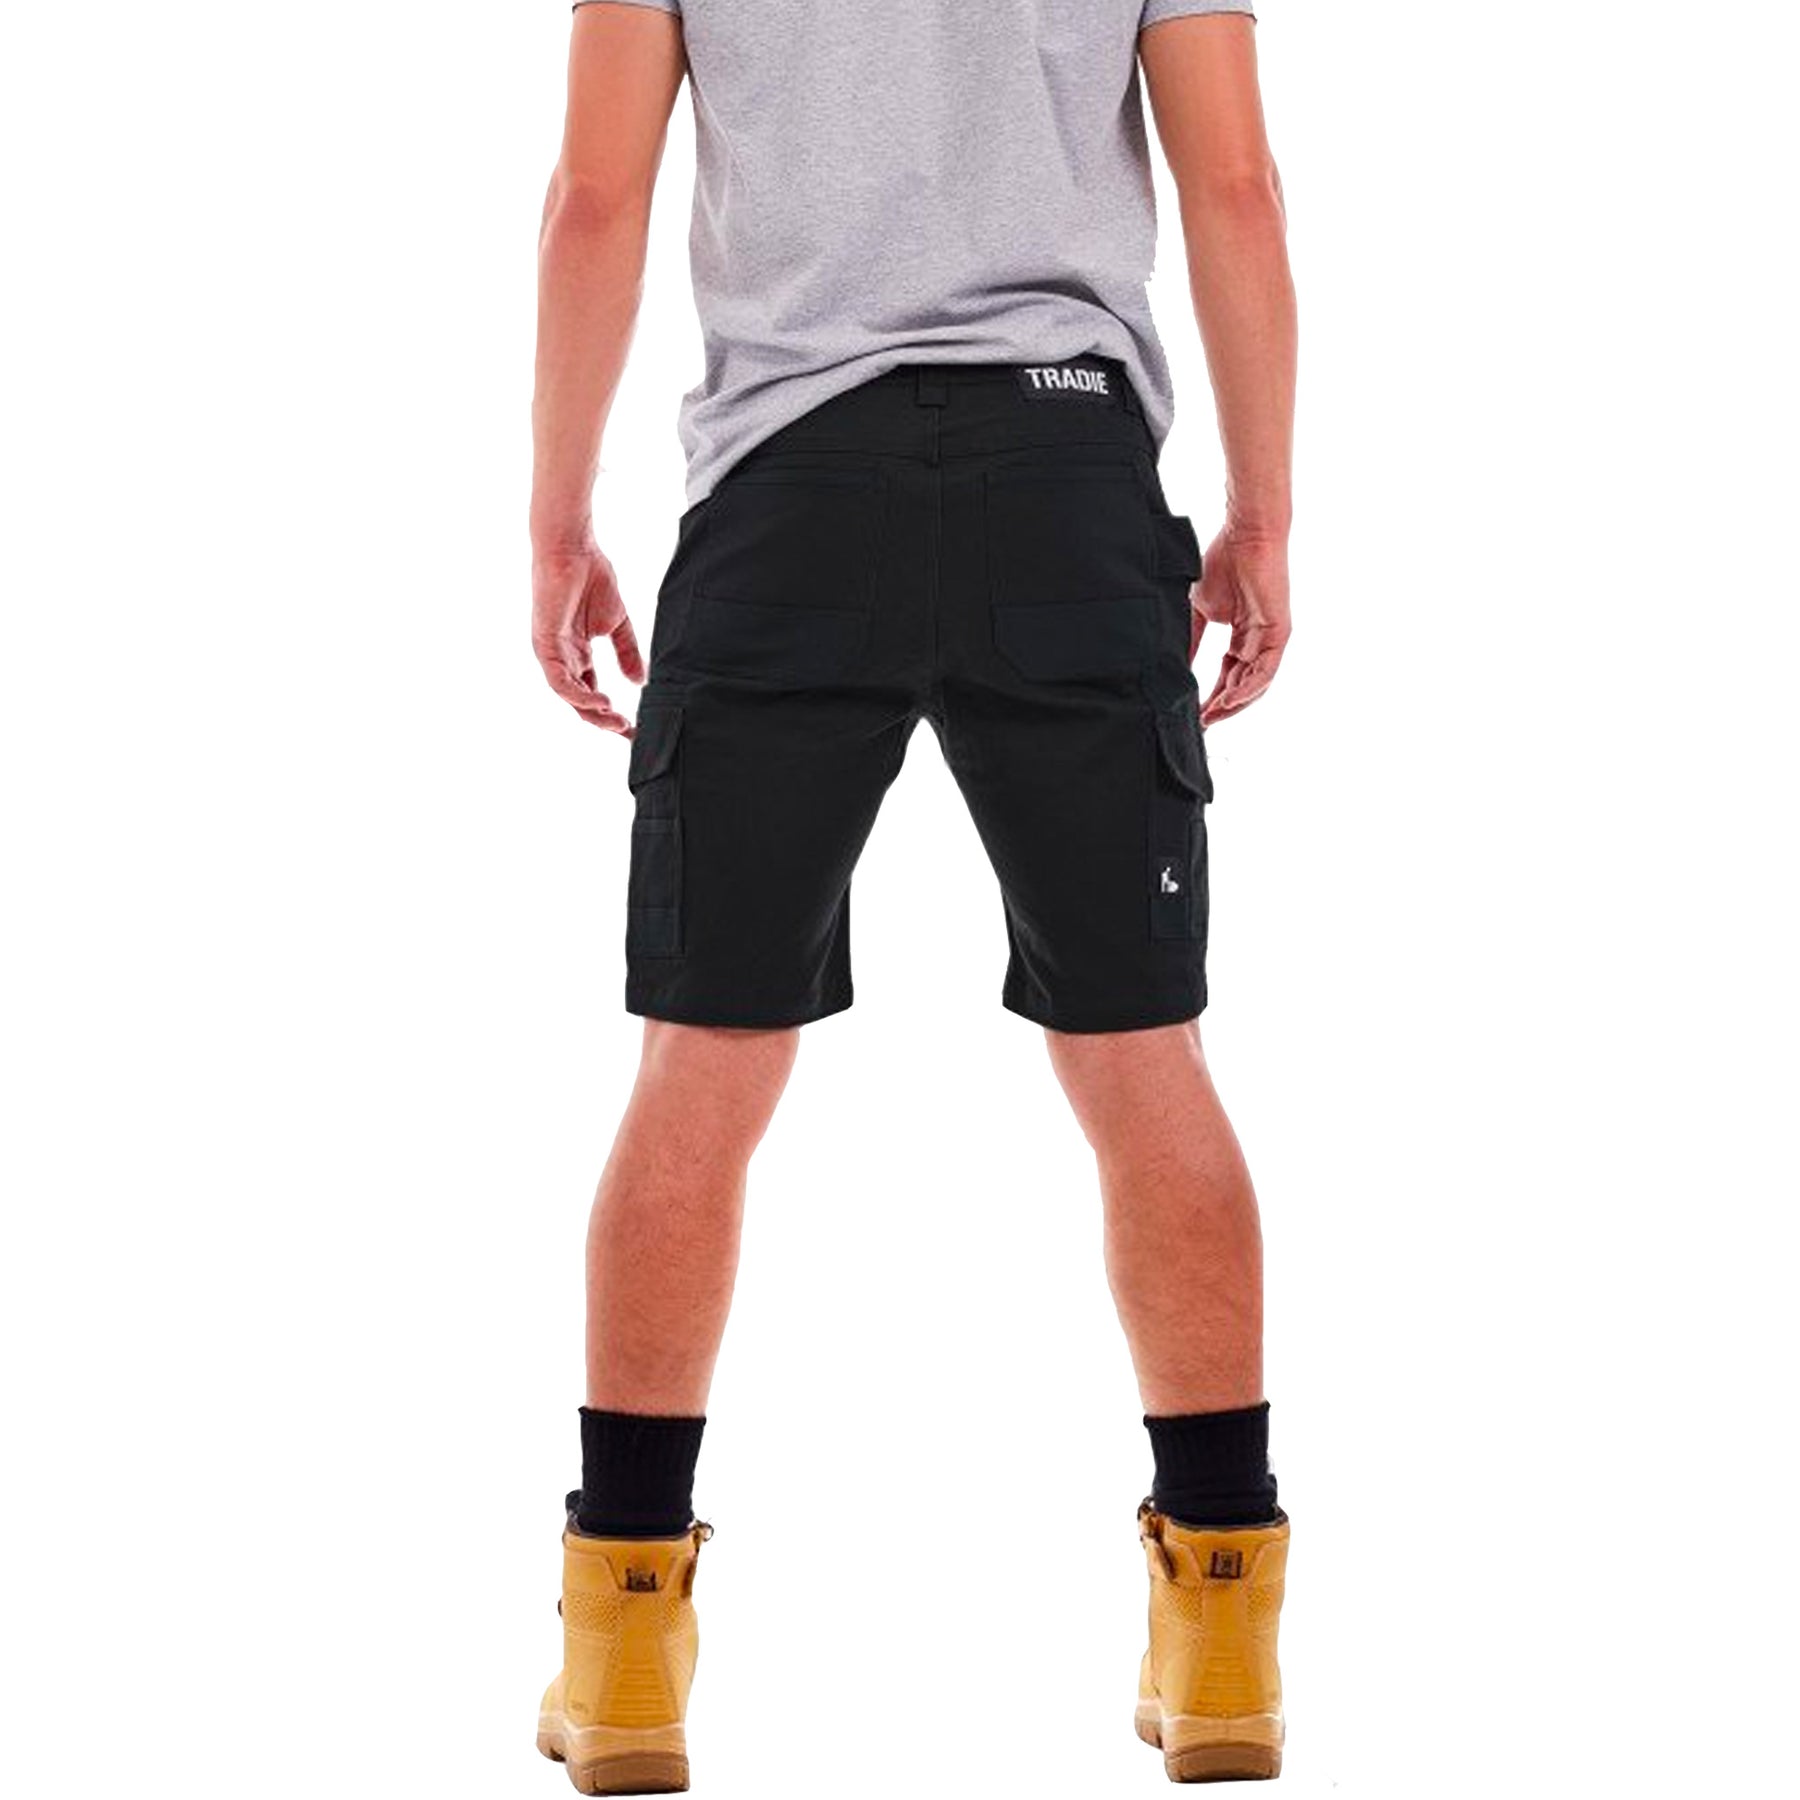 tradie slim fit cargo shorts in black